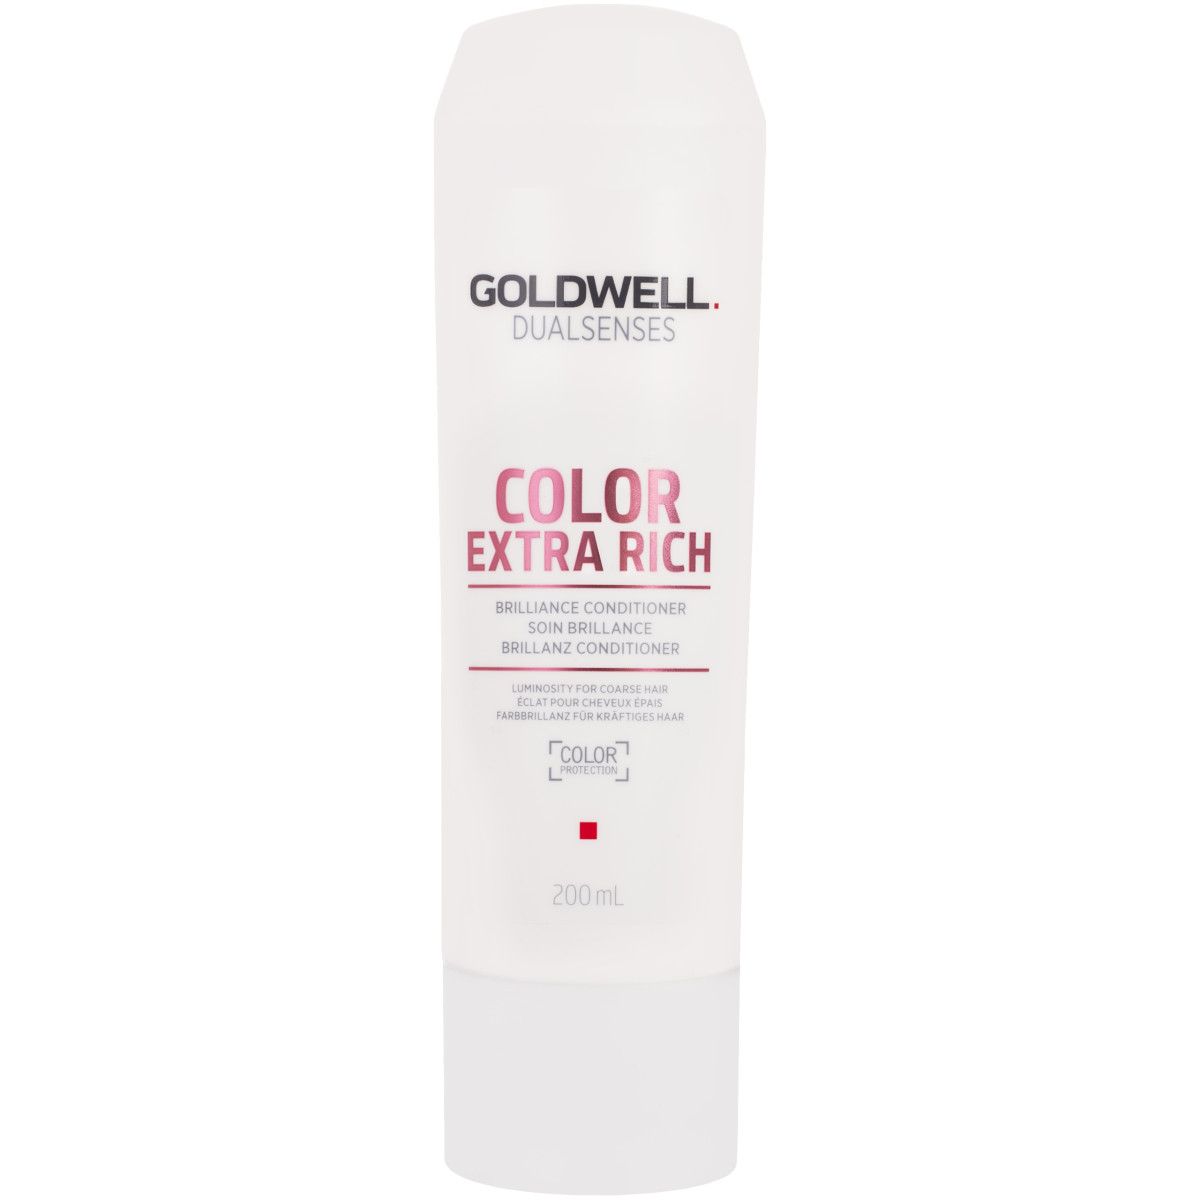 Goldwell Color Extra Rich, nawilżająca odżywka do włosów farbowanych 200ml